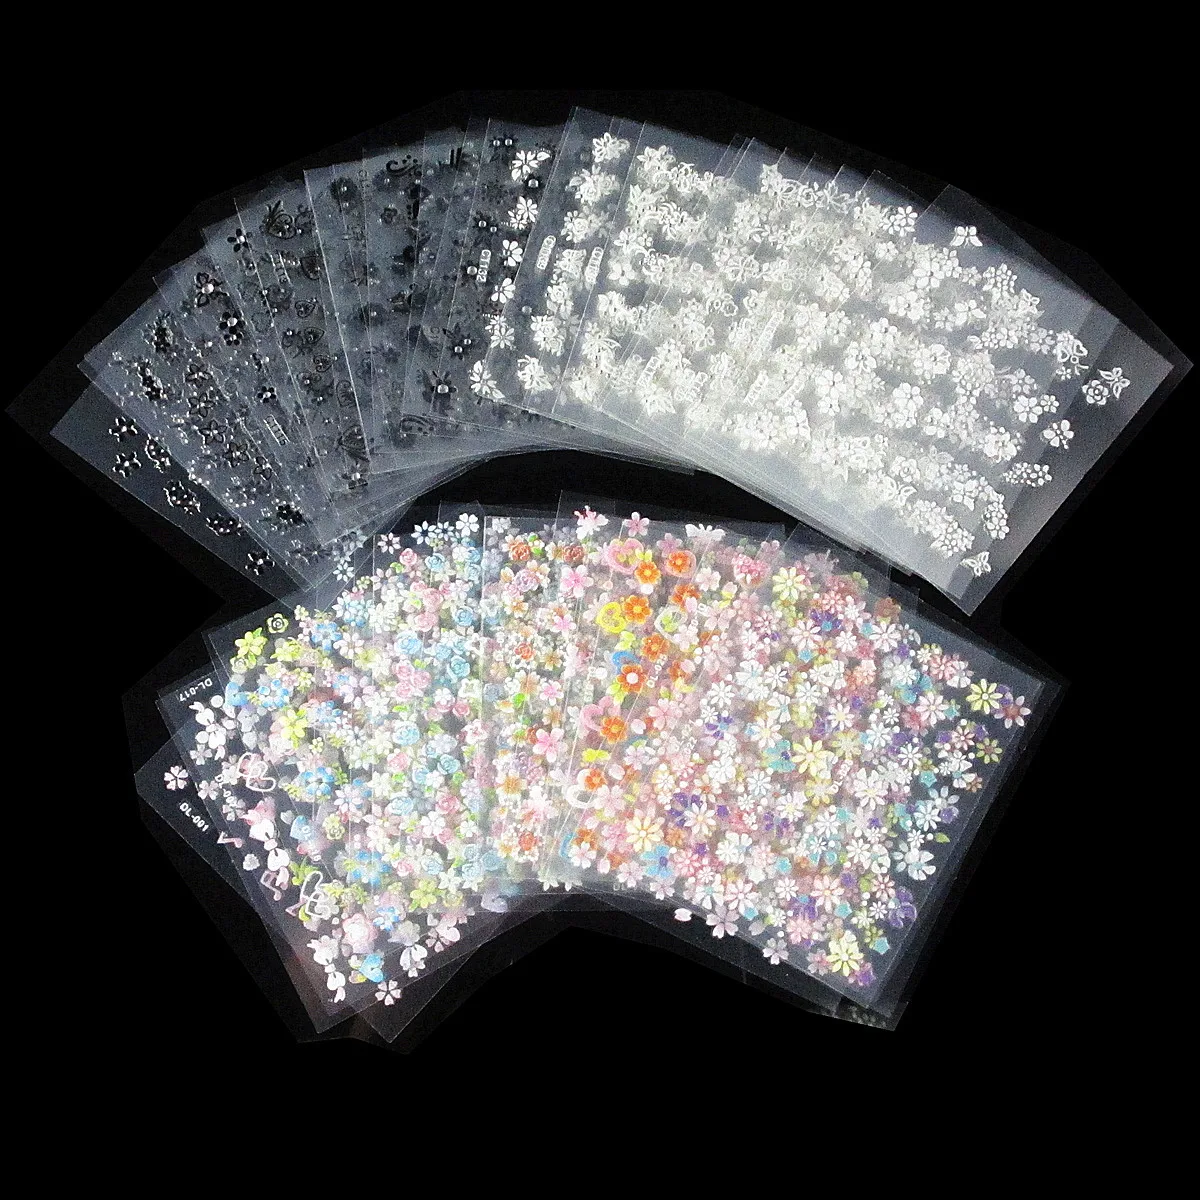 

1 Набор 50 шт./лот № 71(C10-C20-R1) наклейка для ногтей 3D Цветочная наклейка прозрачные цветы самоклеящиеся наклейки для ногтей (50 разных наклеек)